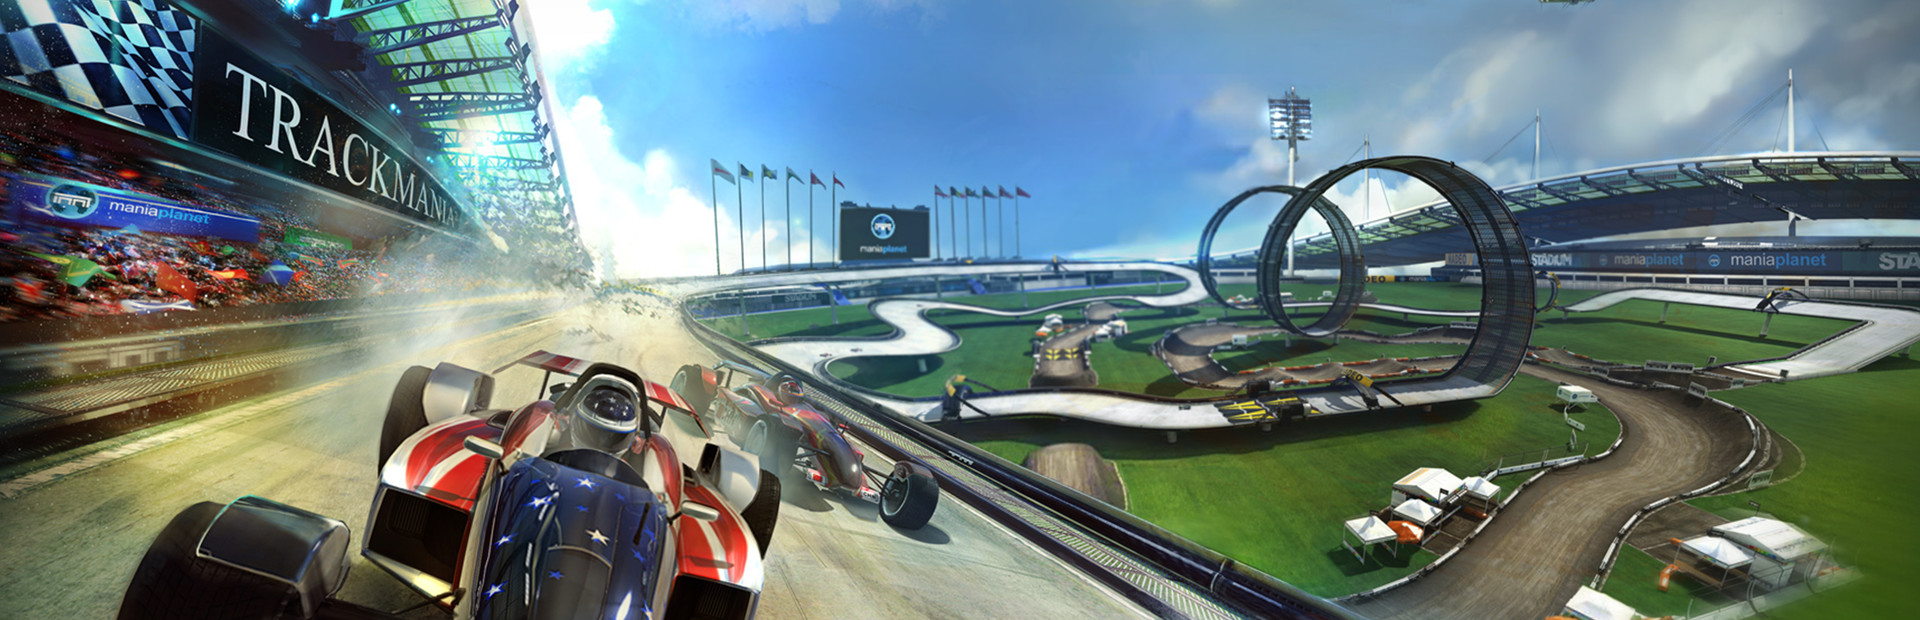 TrackMania² Stadium cover image